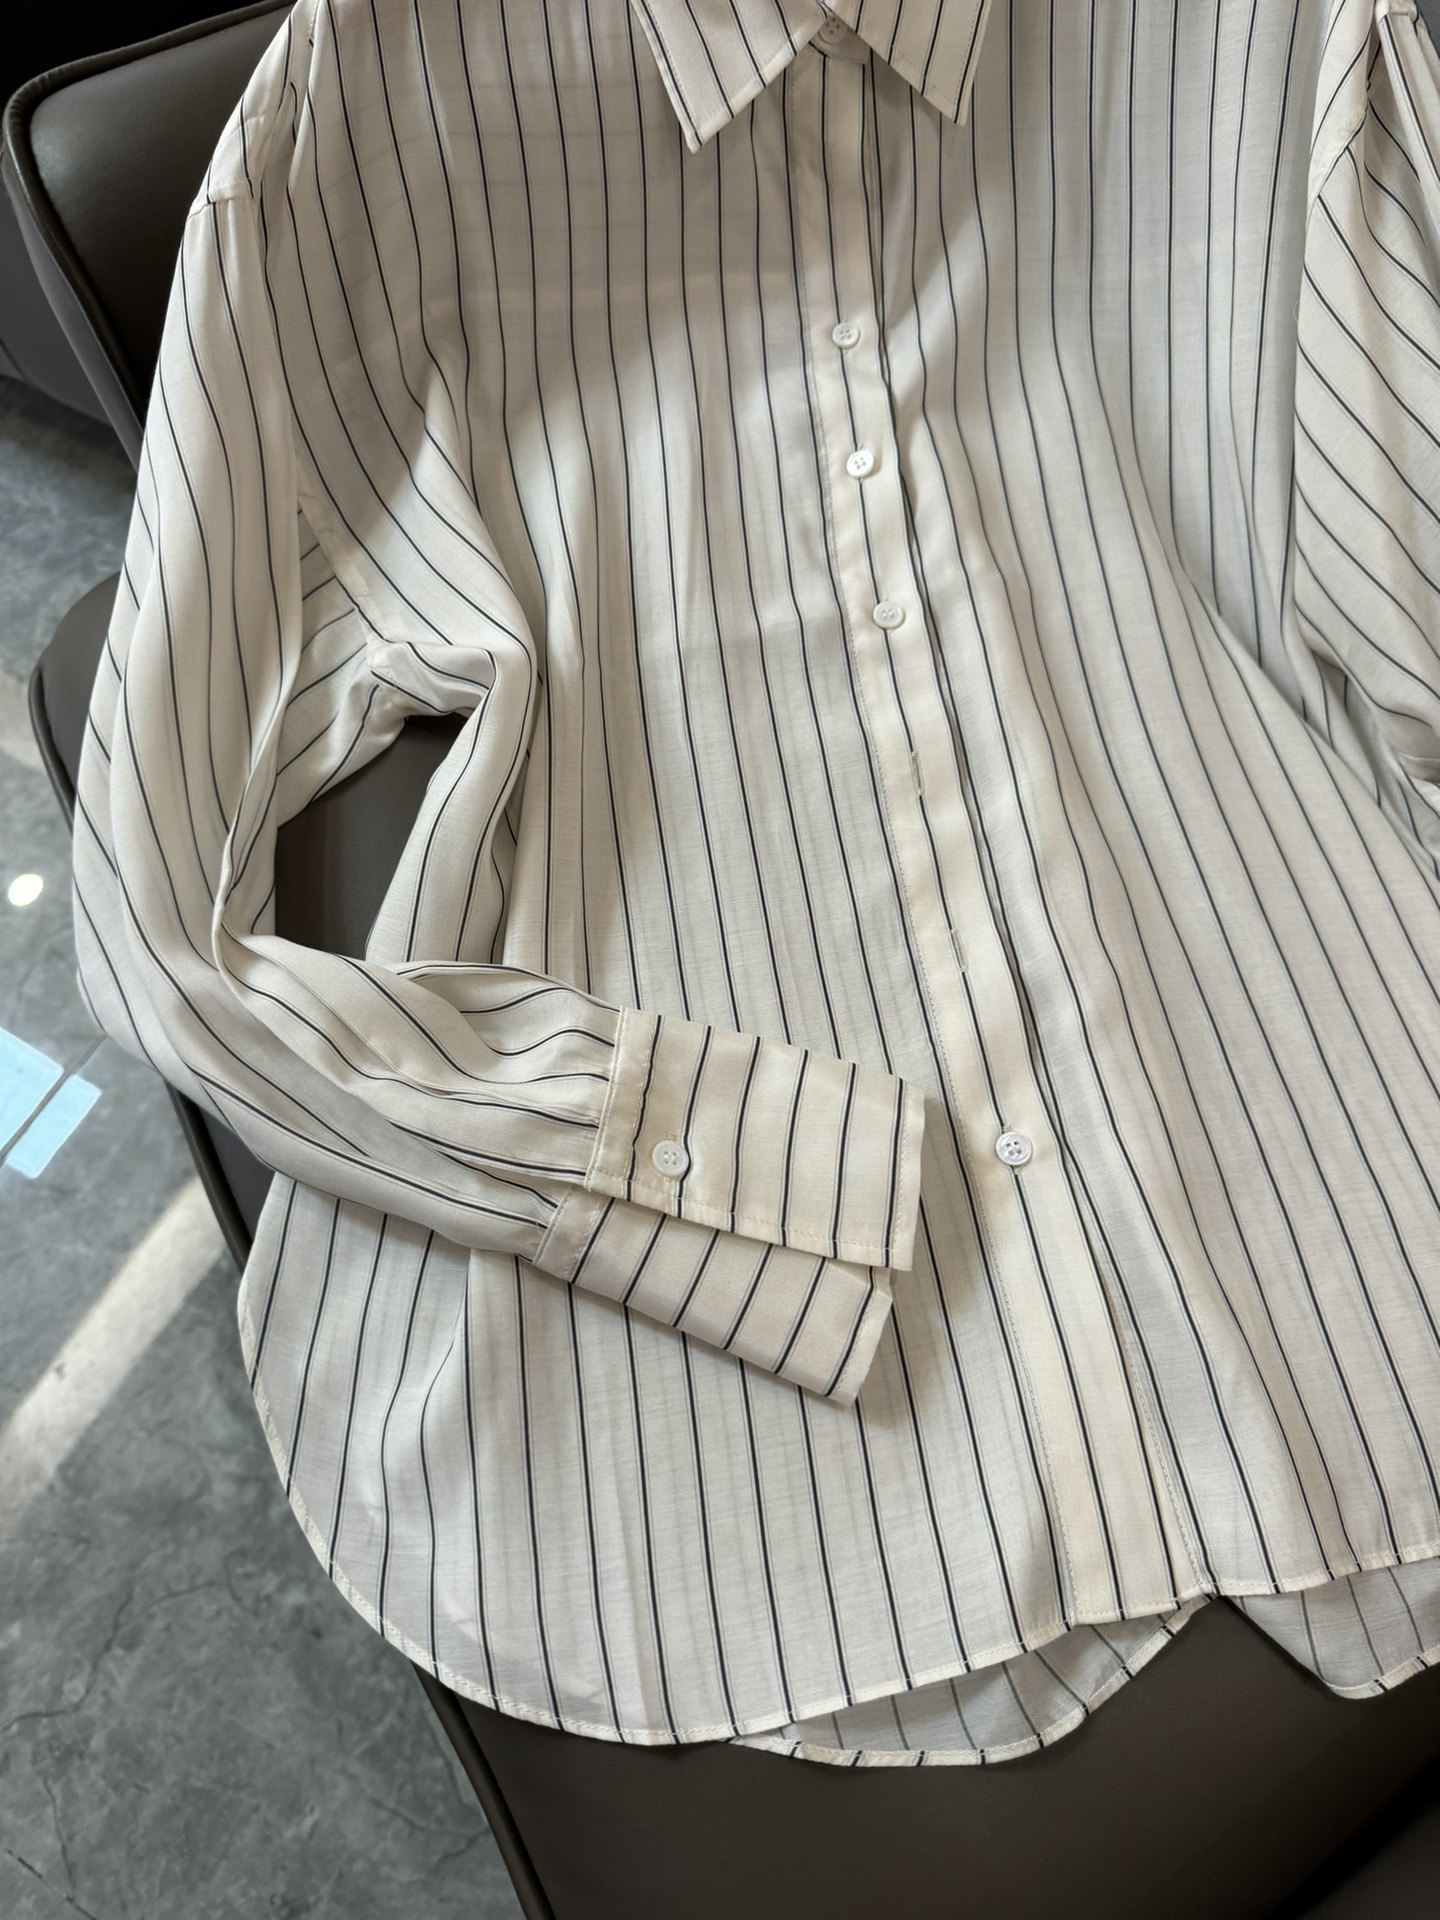 LZ028#新款衬衫BC条纹对格50%真丝全面定制长袖衬衫米色蓝色SML